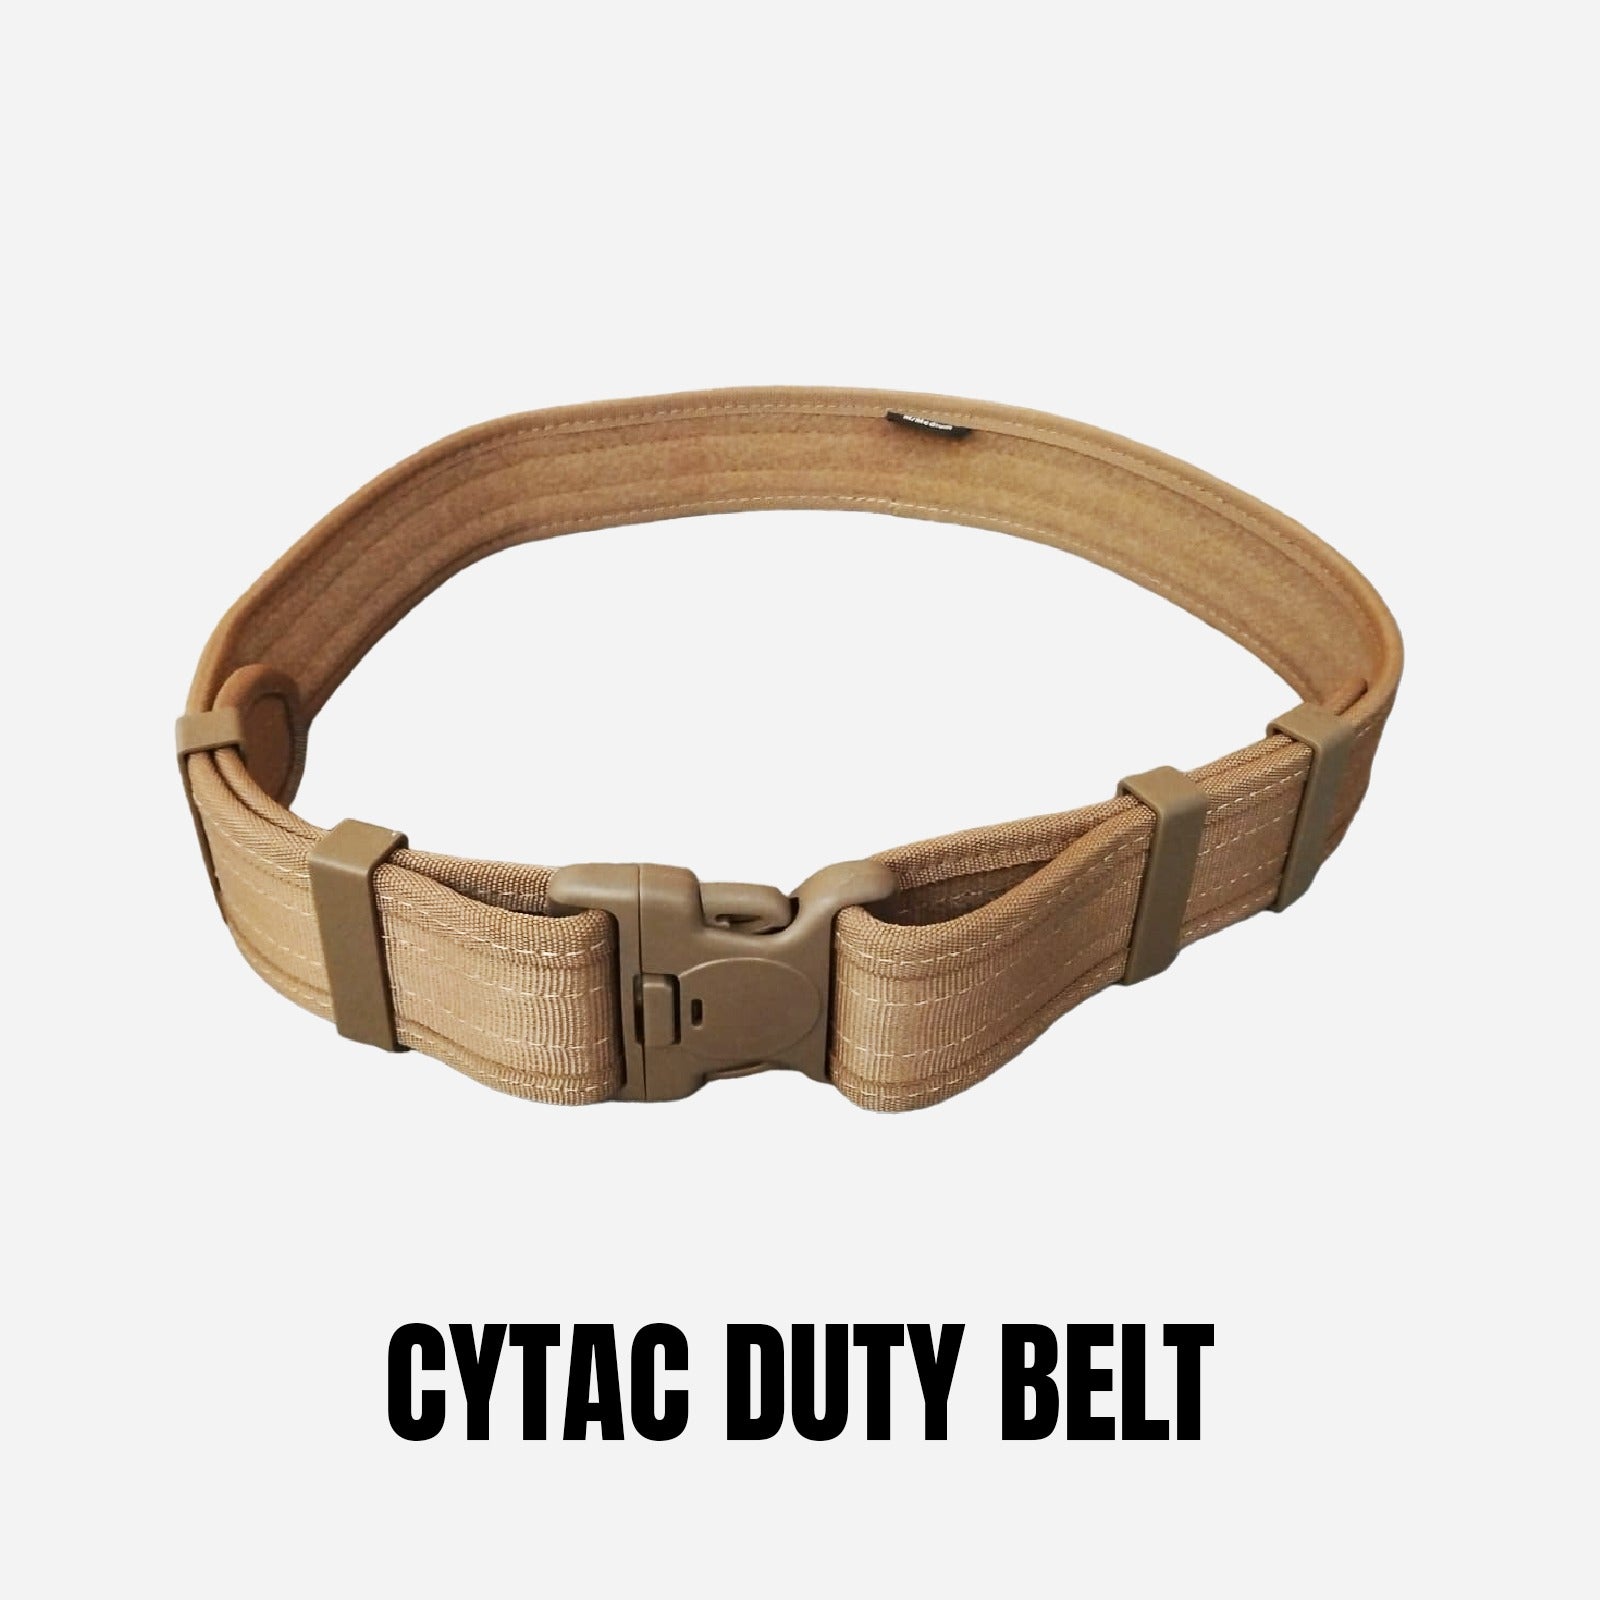 CYTAC DUTY BELT (OG669)